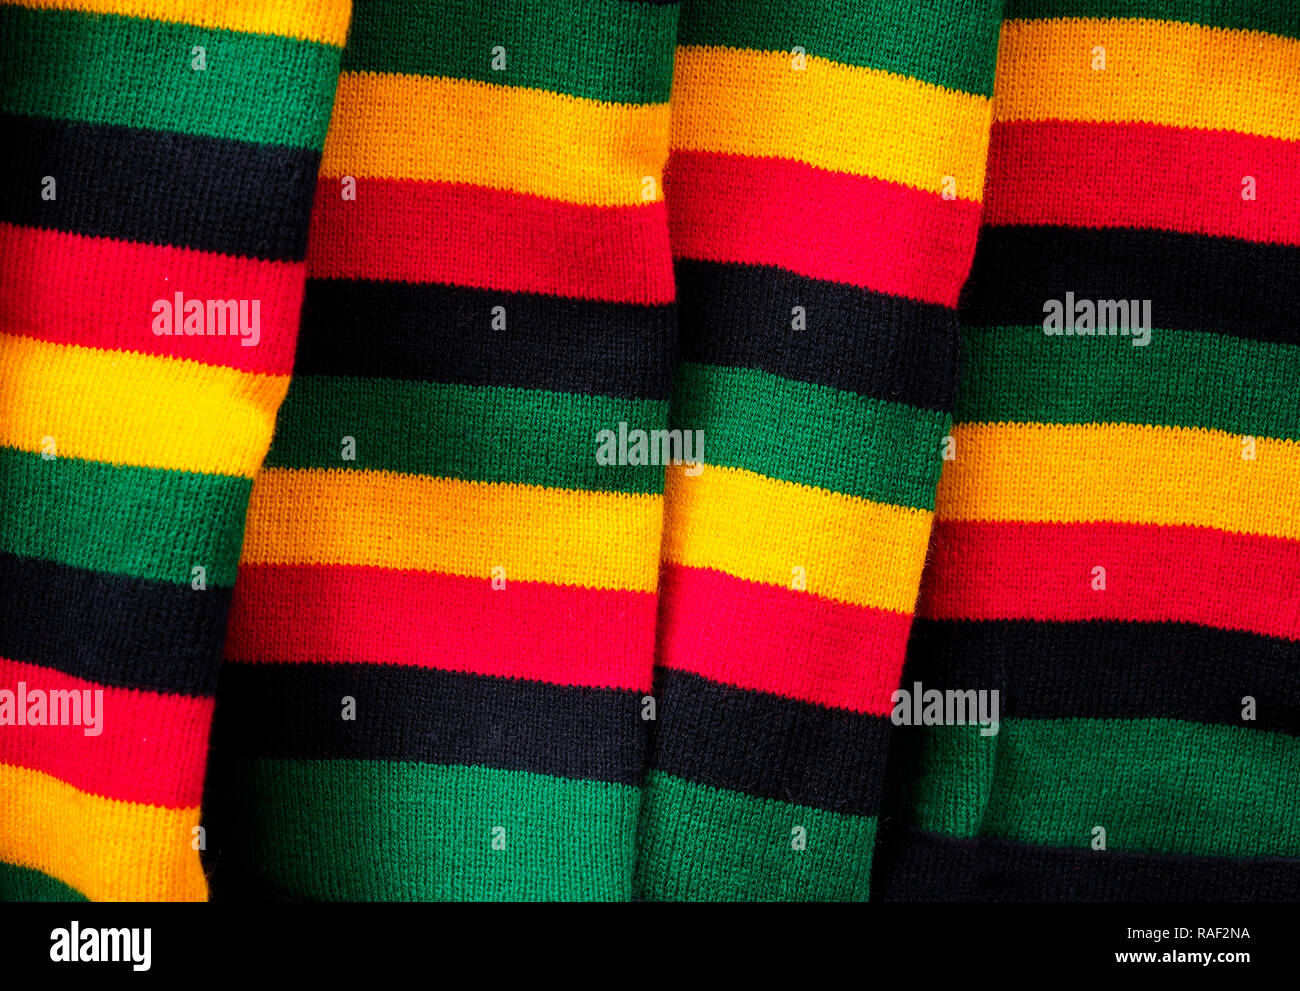 Color de fondo de unos calcetines de lana a la venta en un mercado callejero Foto de stock